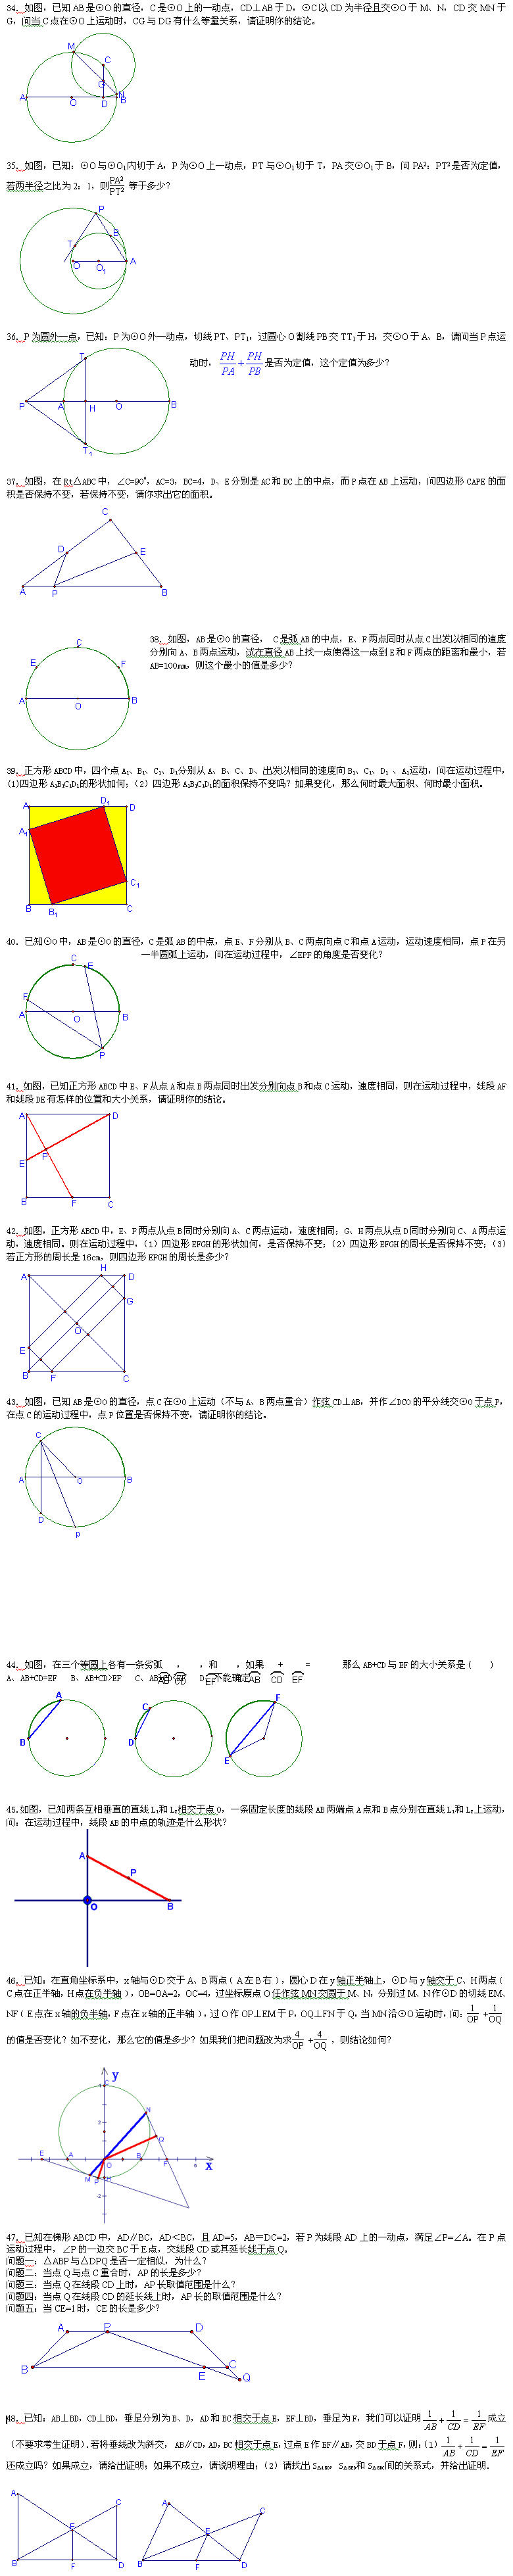 《动态数学问题50例》(三)2